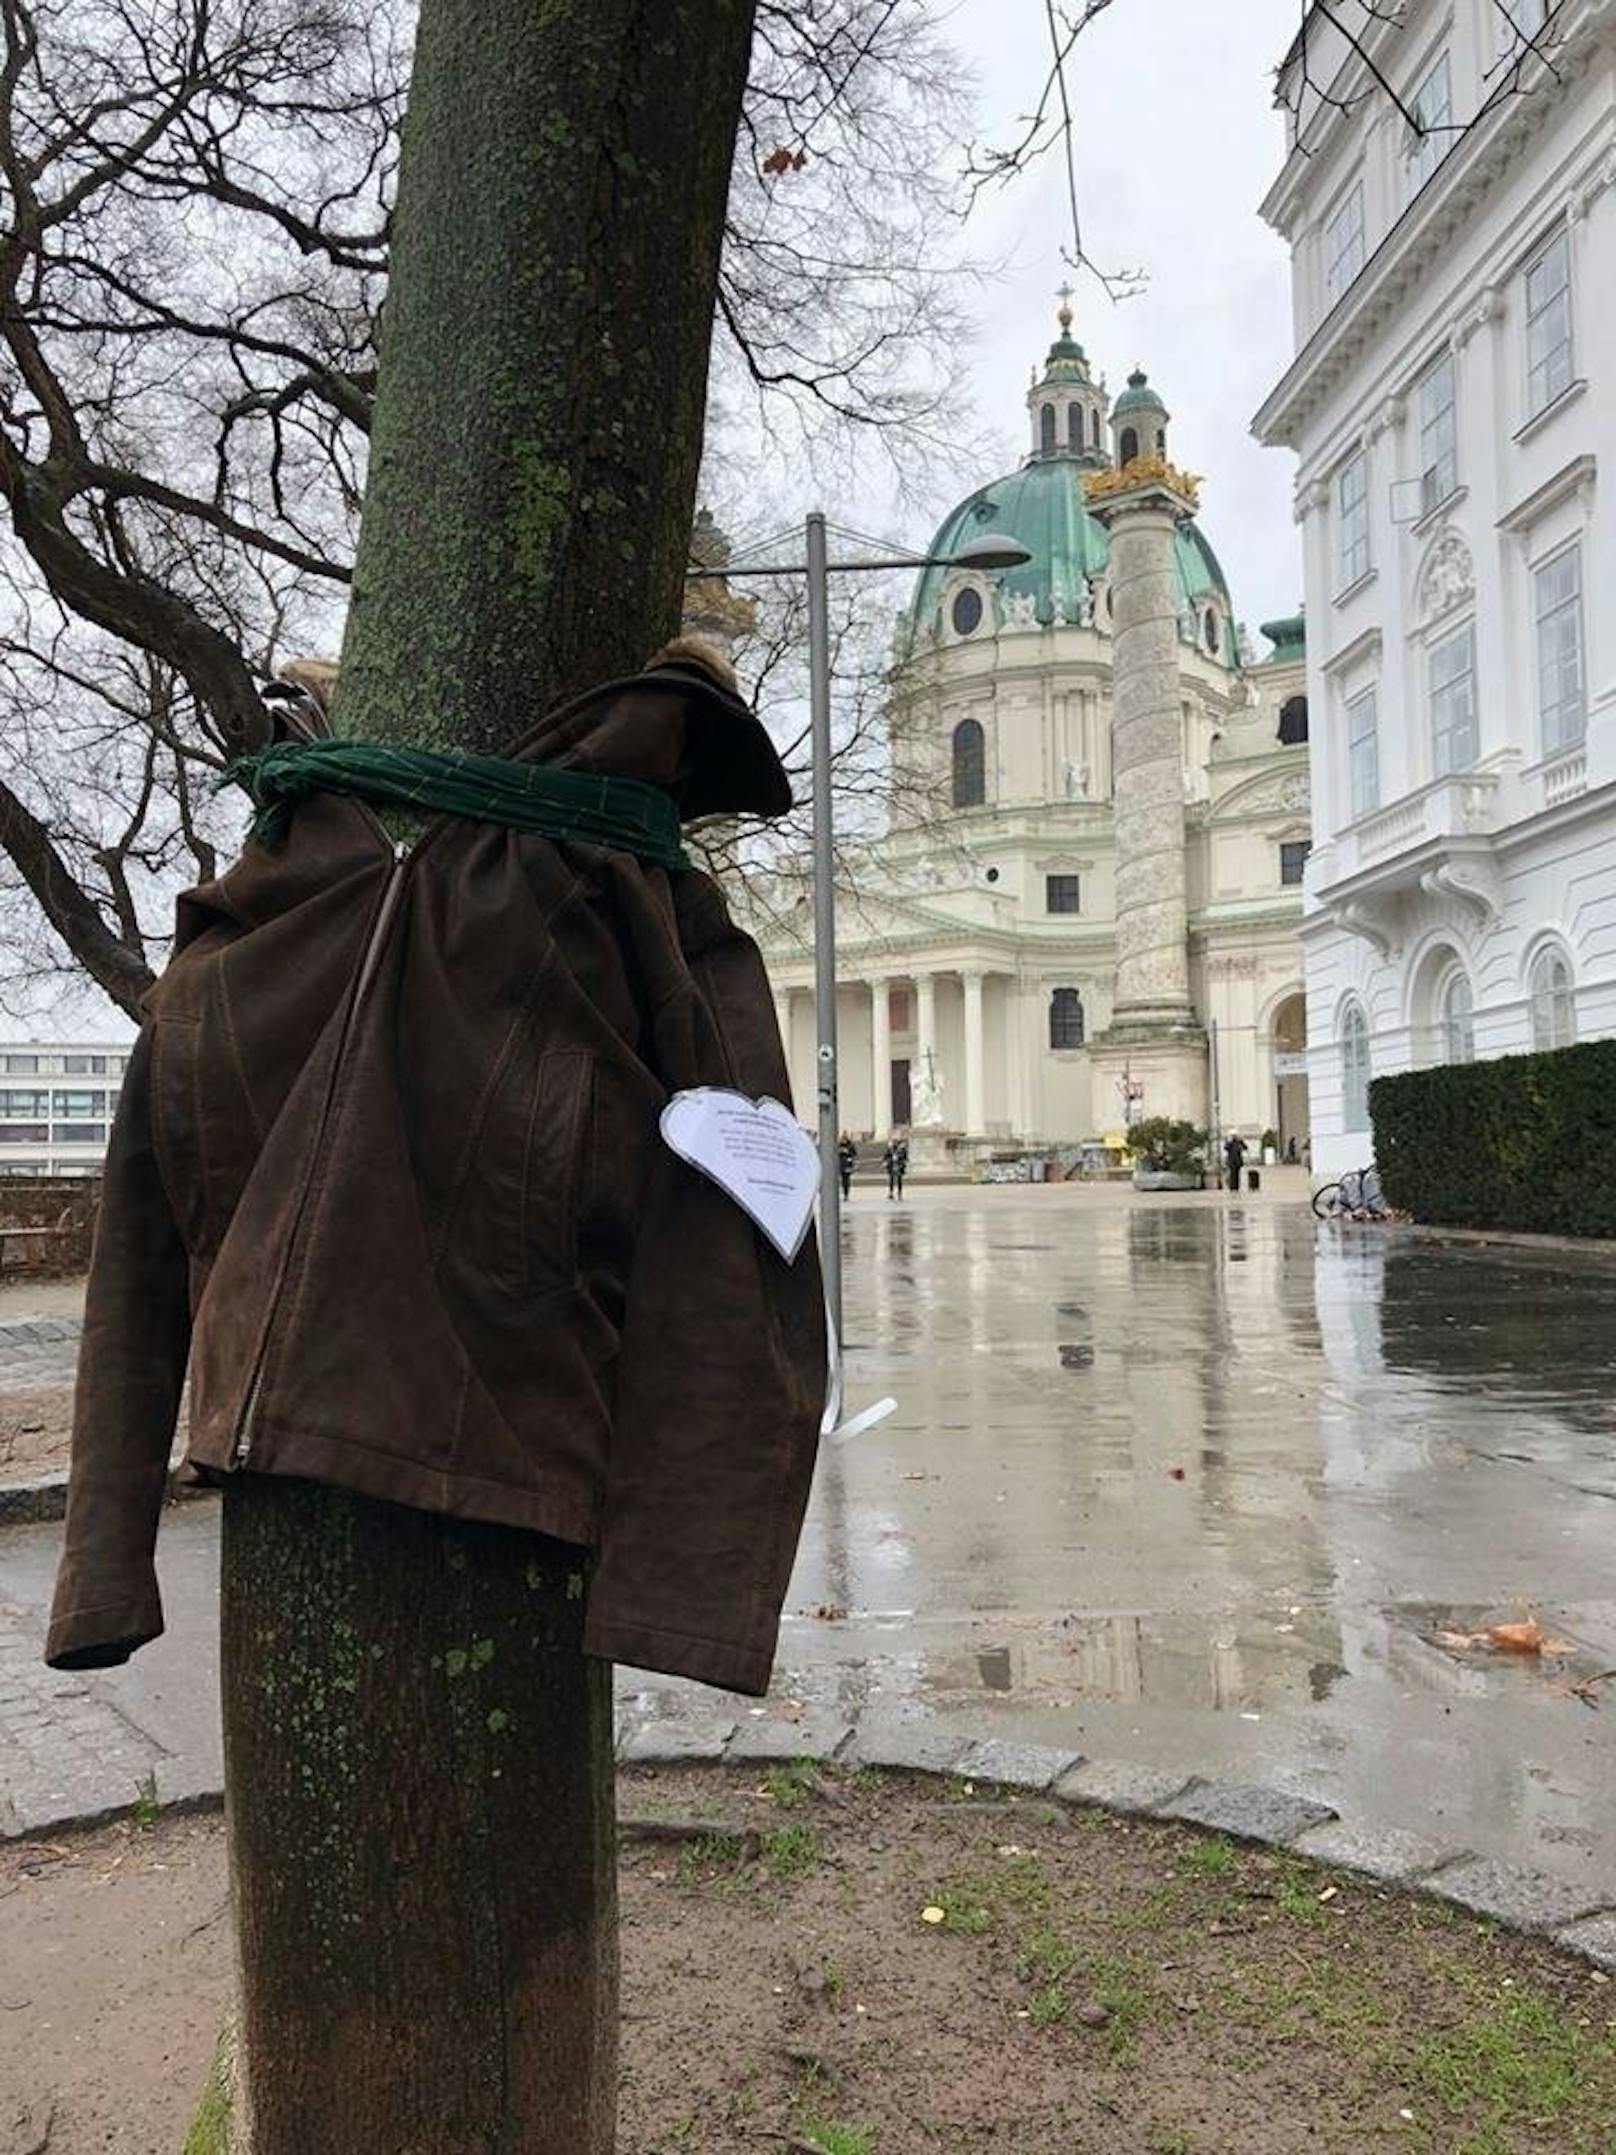 In Bulgarien und in der Türkei begannen bereits  im Dezember 2017 Menschen Winterjacken, Schals, Hauben, Socken und aufmunternde Botschaften auf Bäume zu hängen...